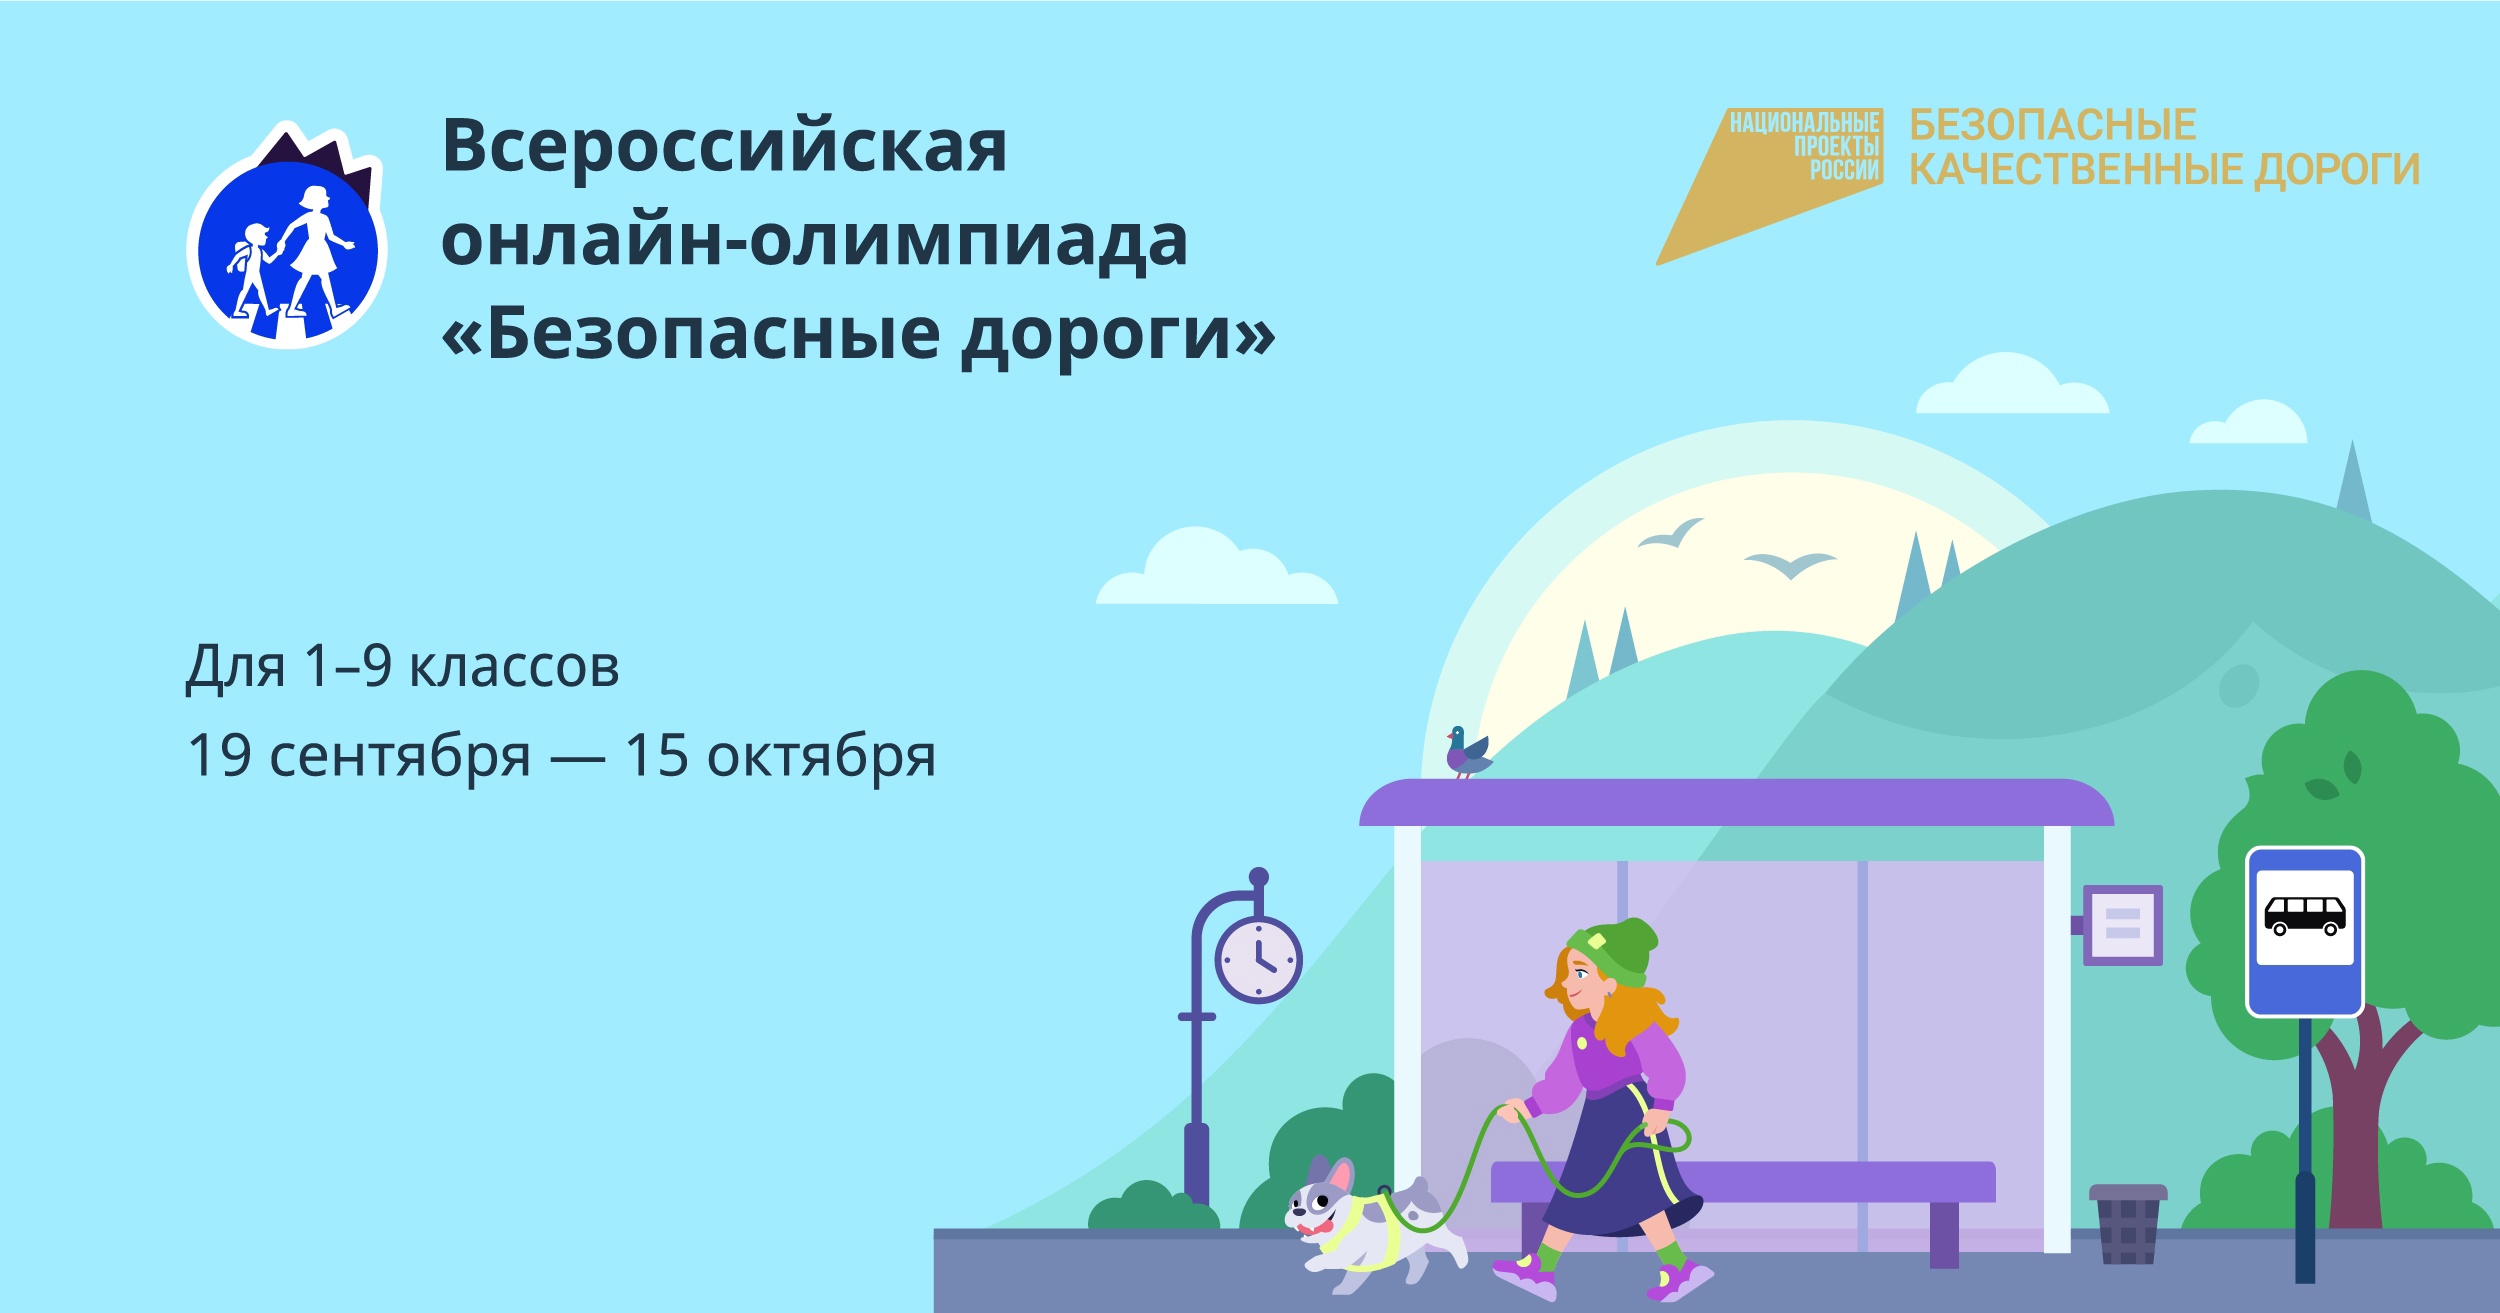 Всероссийская онлайн-олимпиада для обучающихся 1-9 классов «Безопасные дороги».